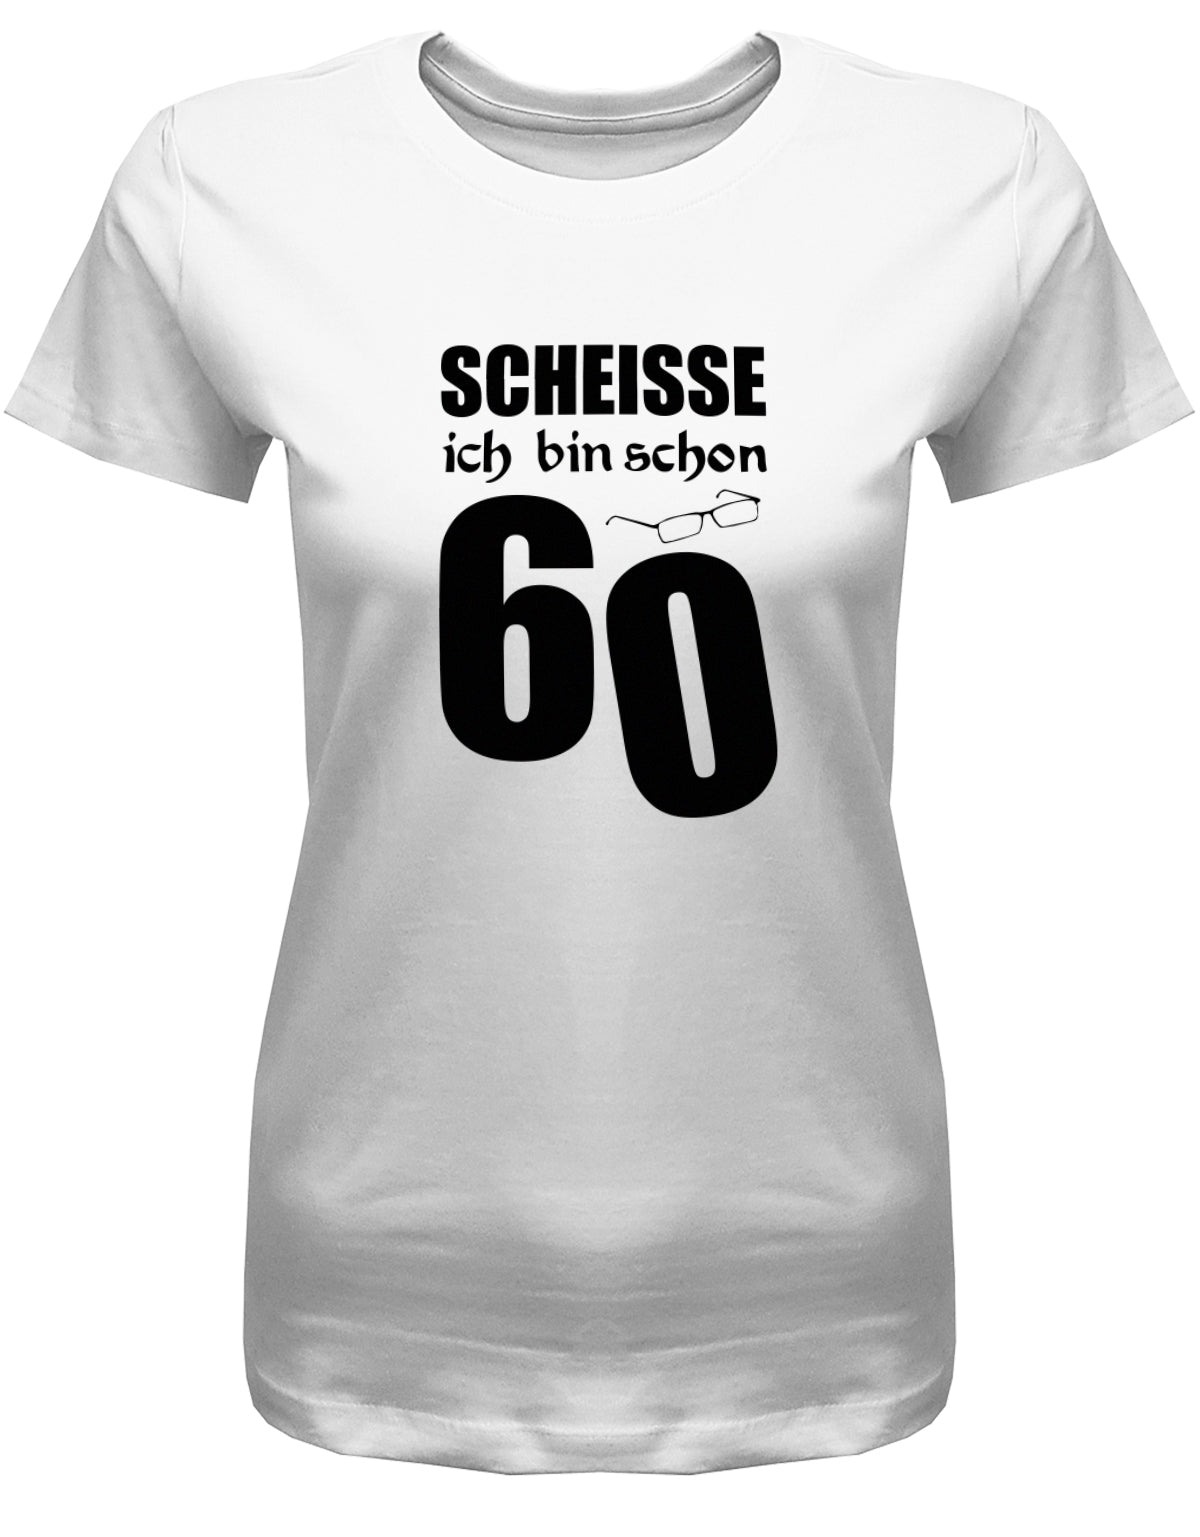 Lustiges T-Shirt zum 60. Geburtstag für die Frau Bedruckt mit Scheisse ich bin schon 60 Lesebrille. Weiss